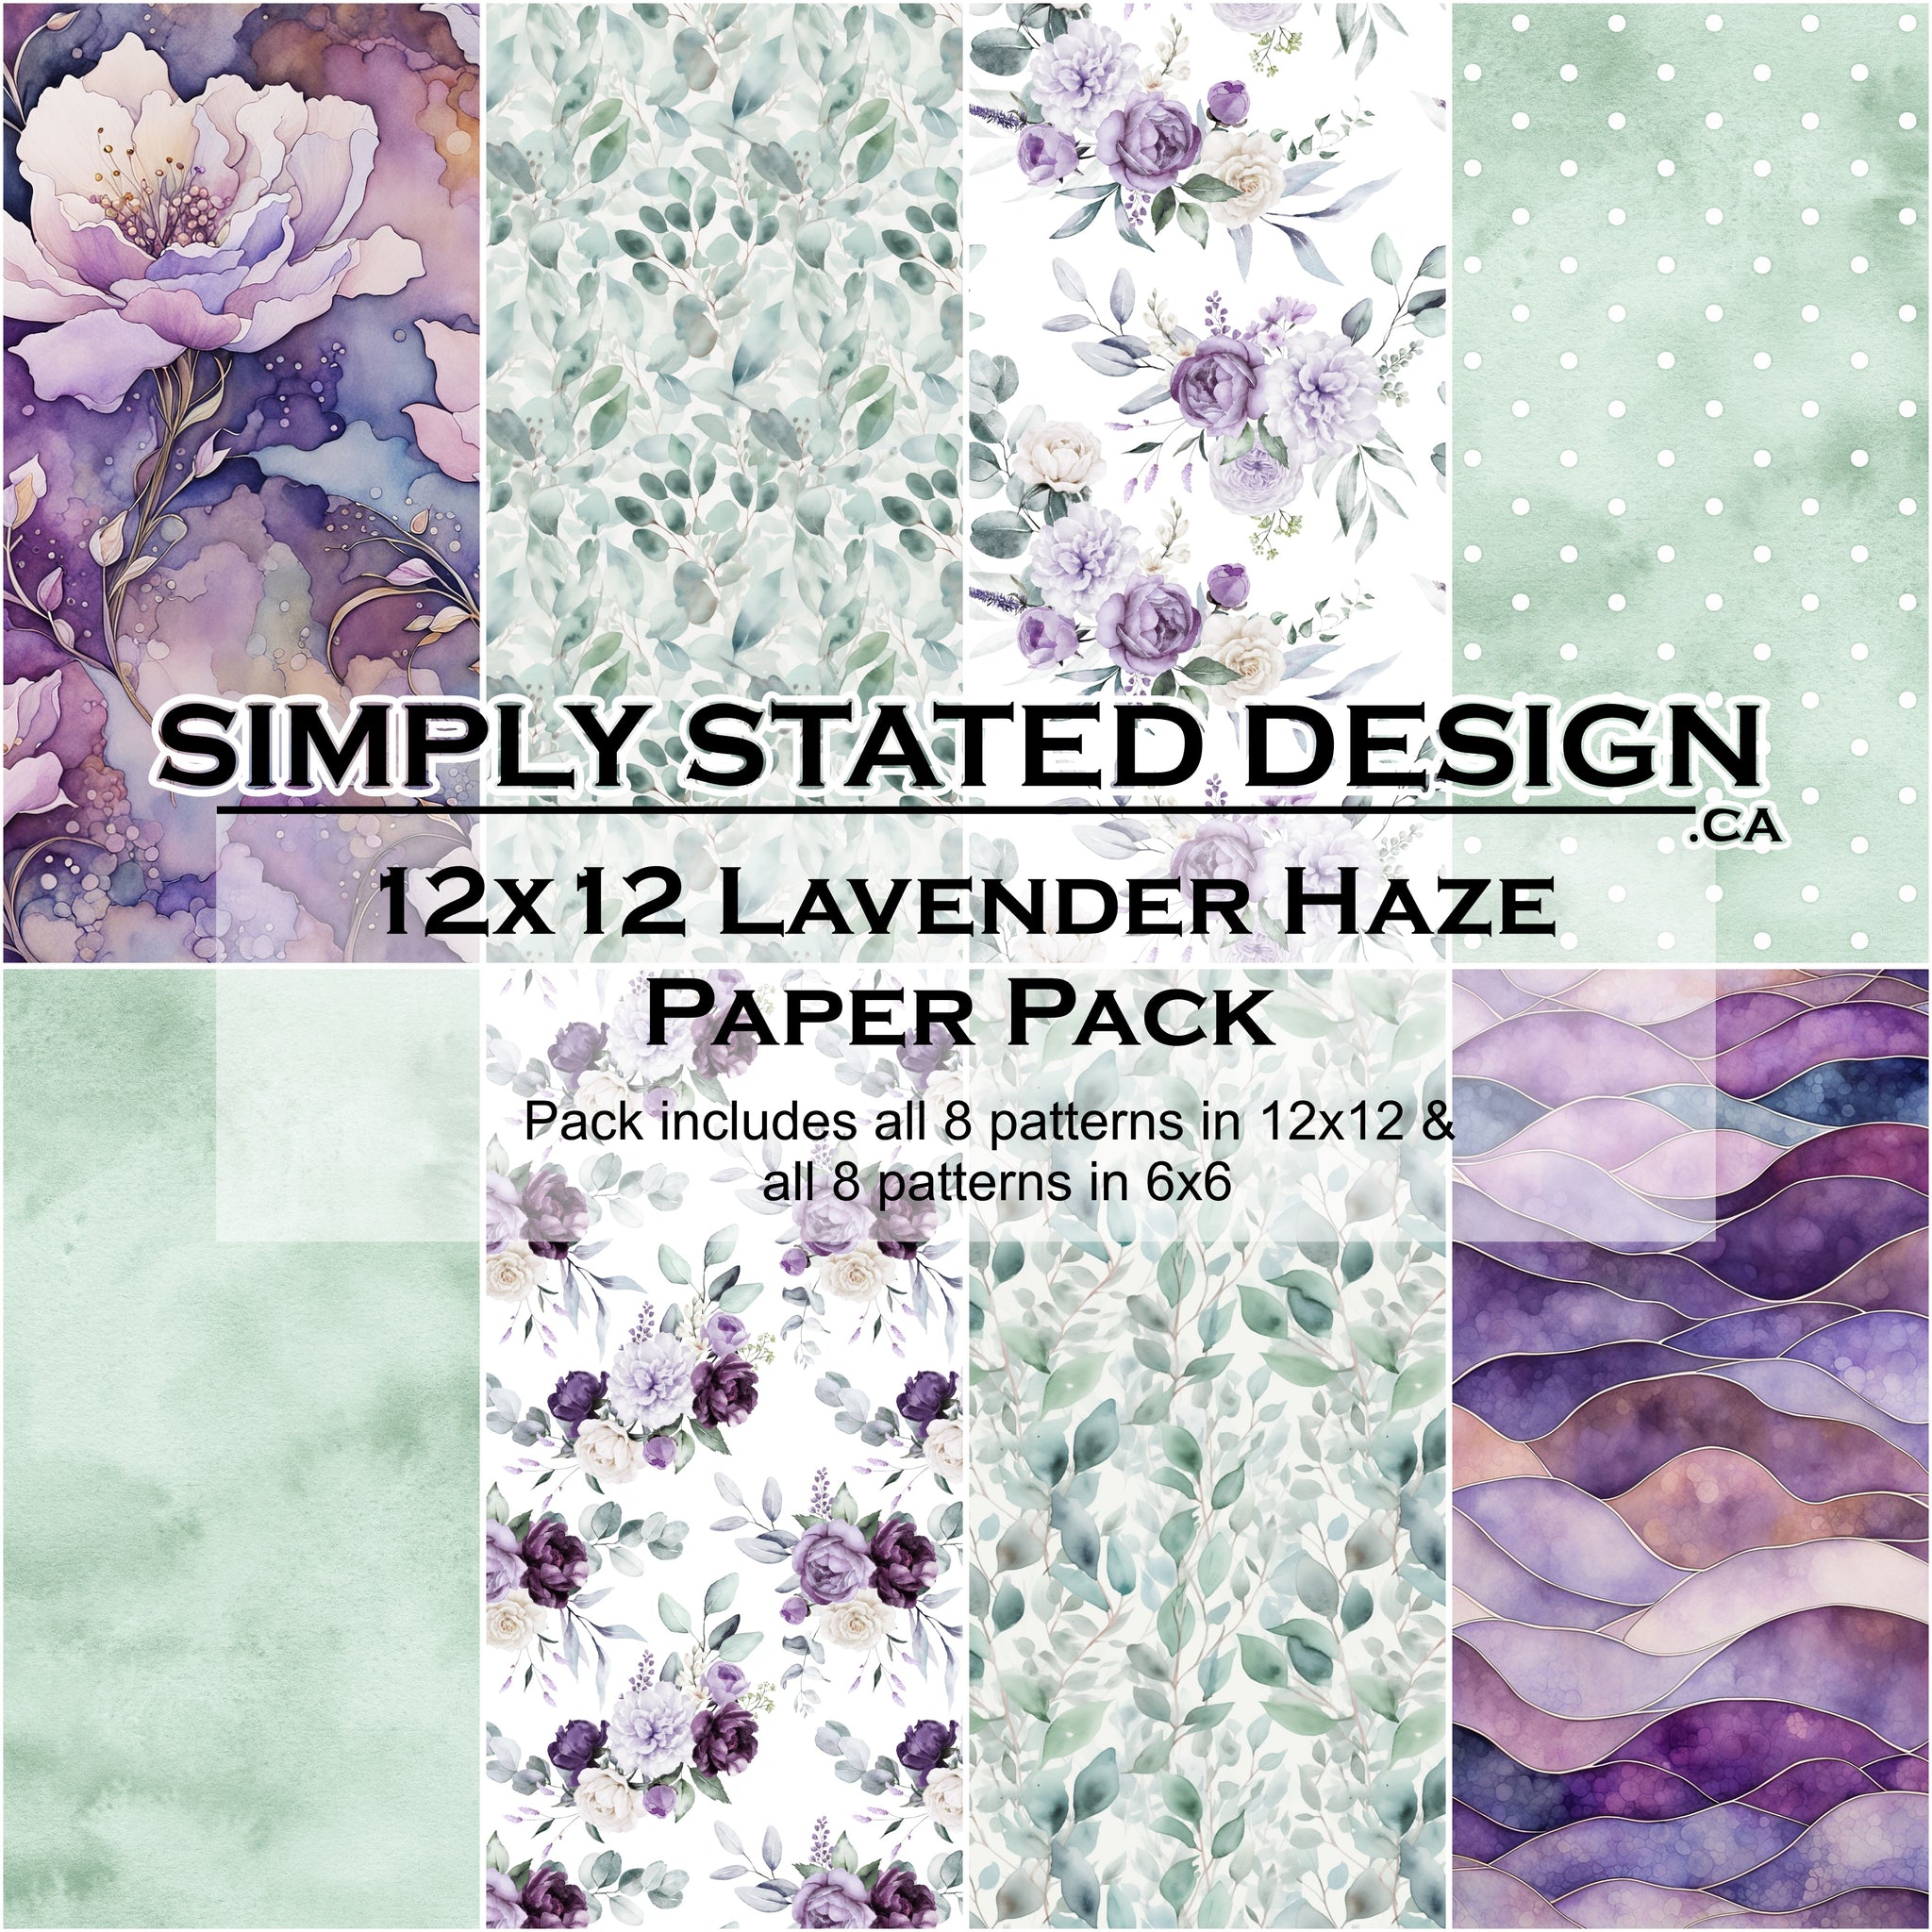 Lavender Haze 12x12 Paper Pack